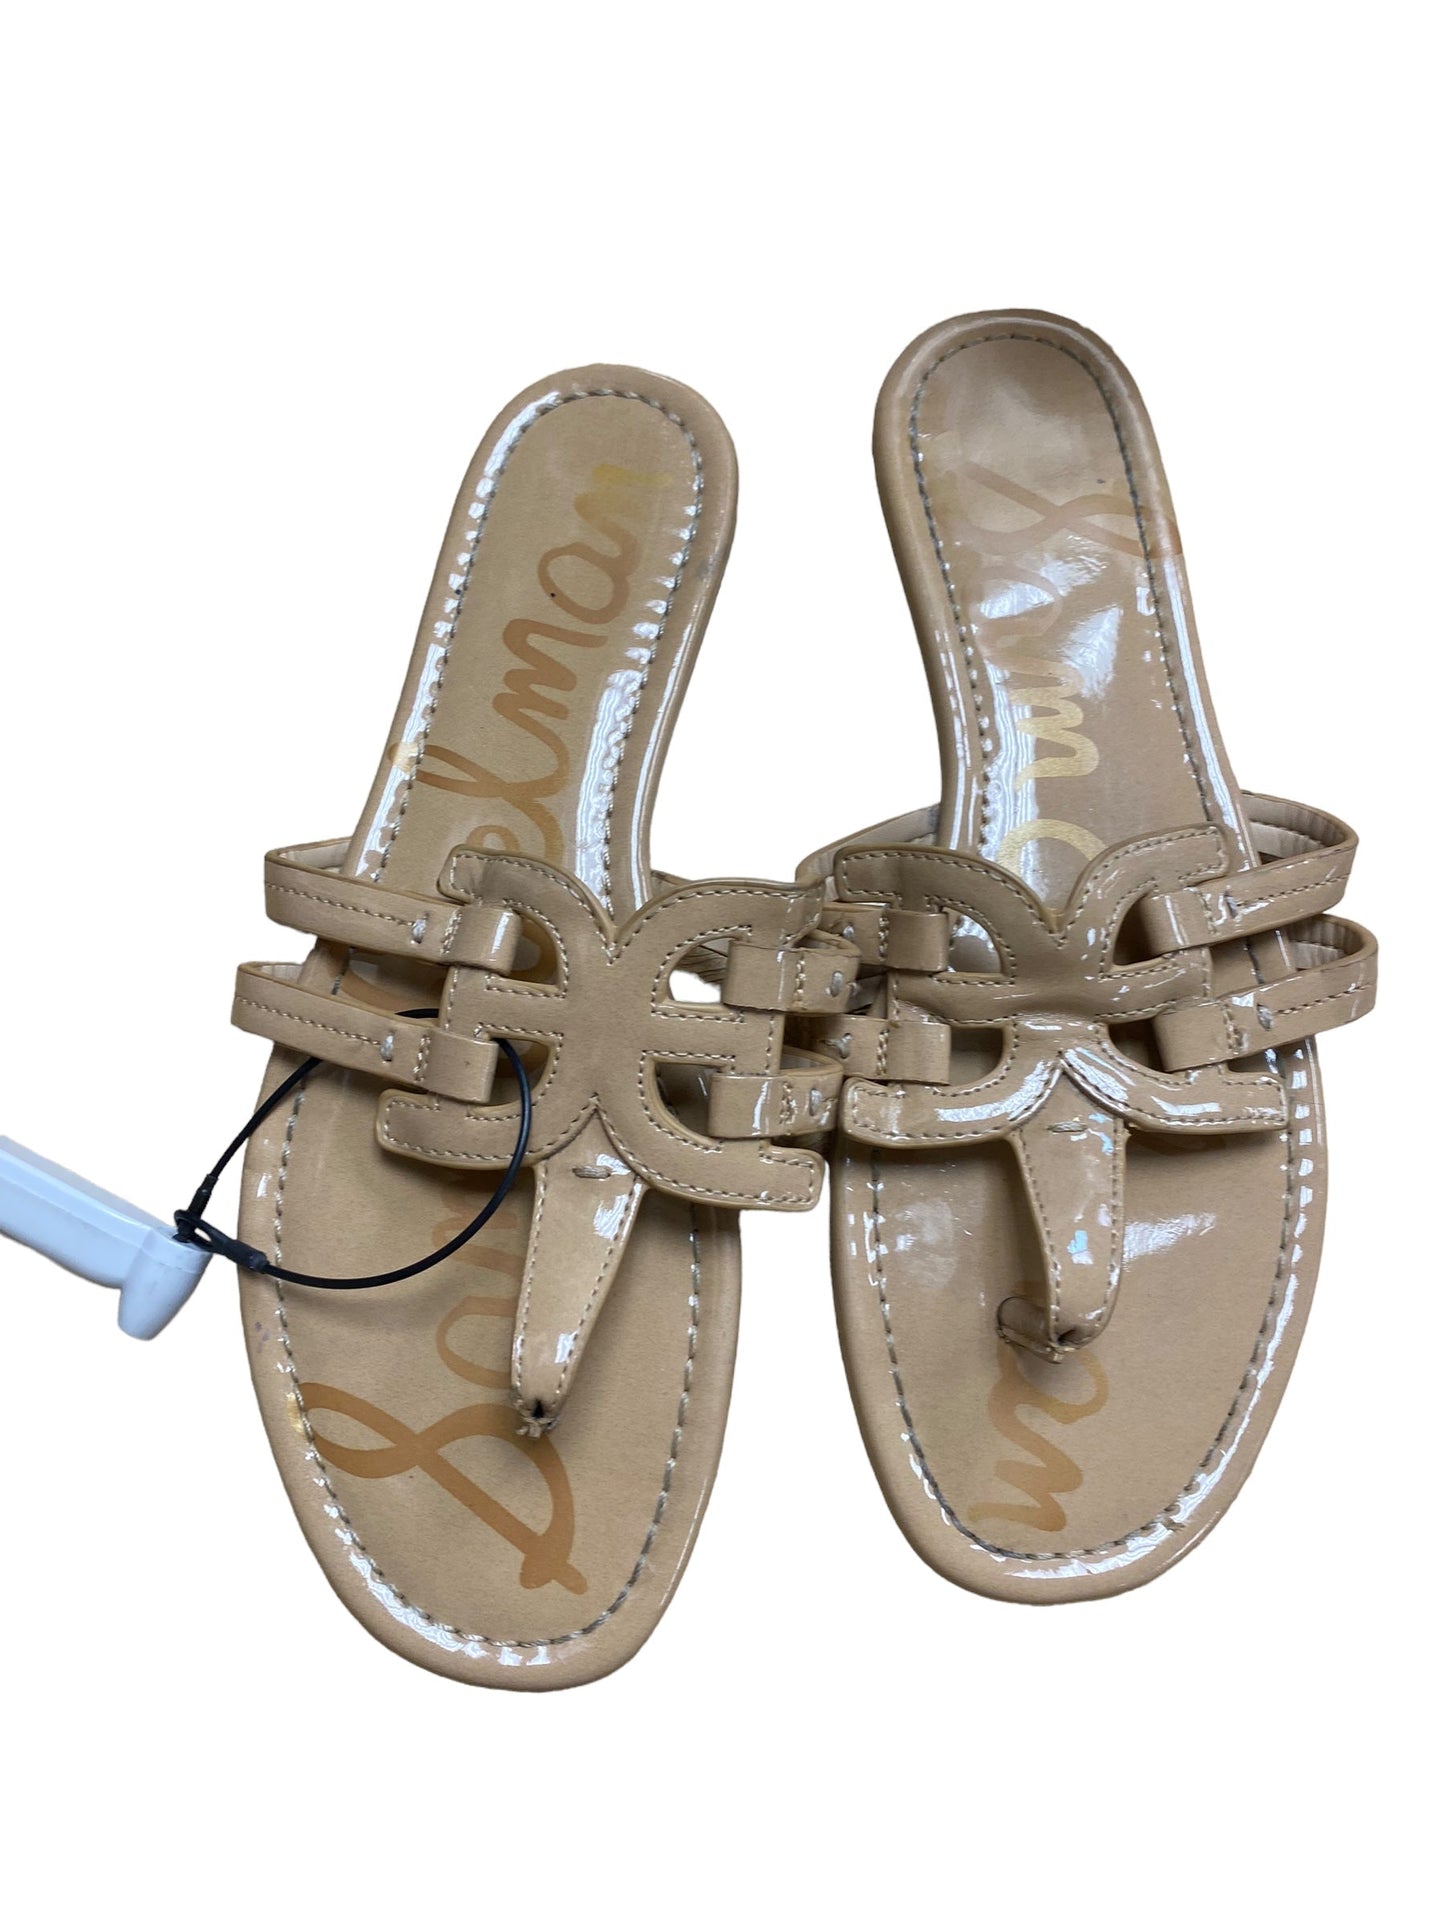 Sandals Flip Flops By Sam Edelman  Size: 8.5